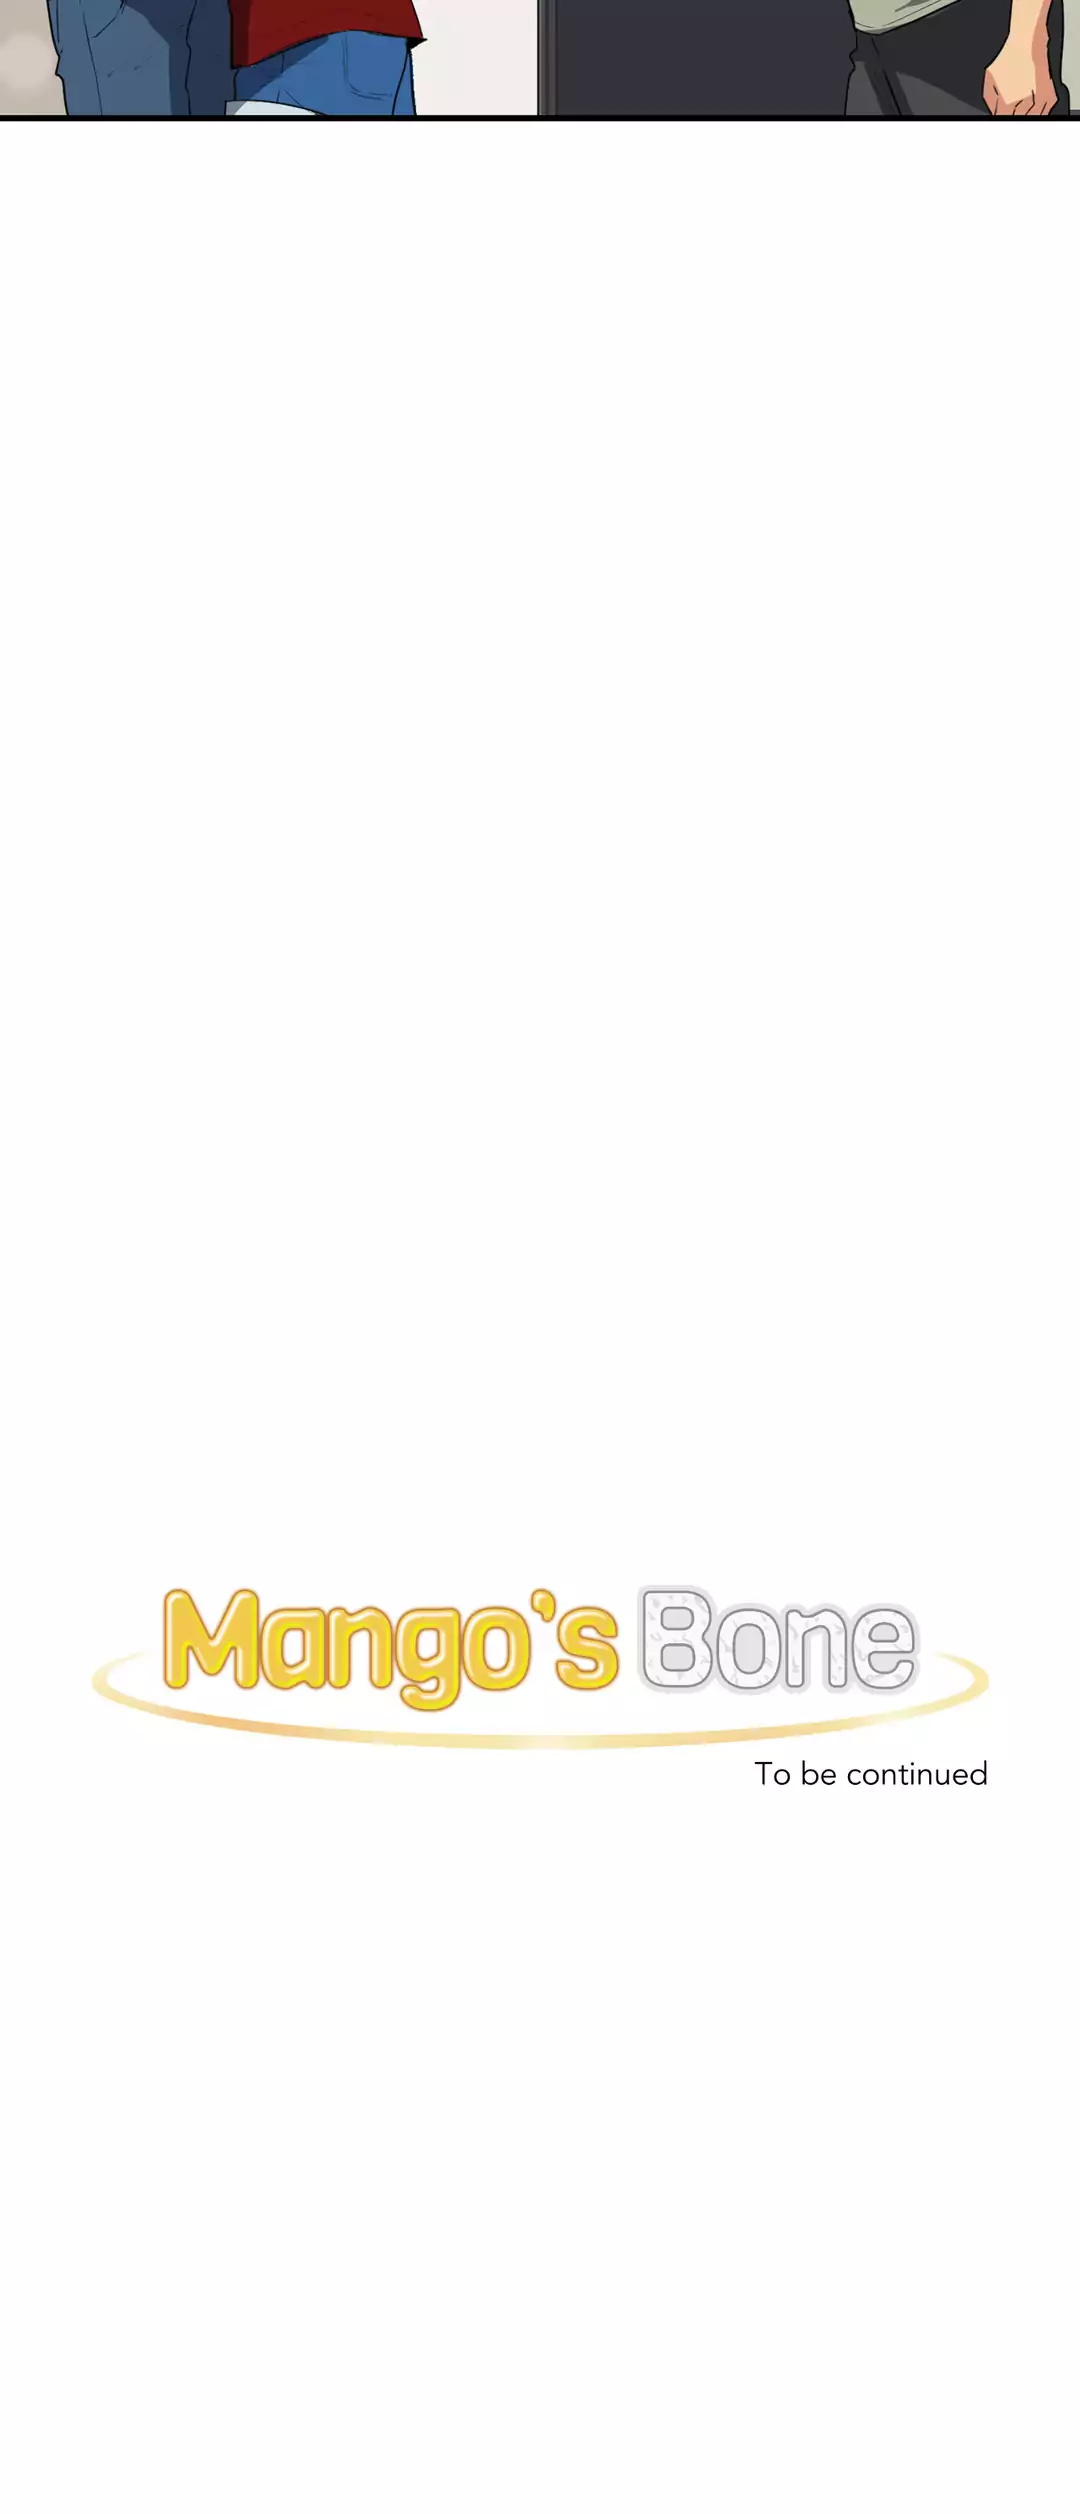 Mango’s Bone image